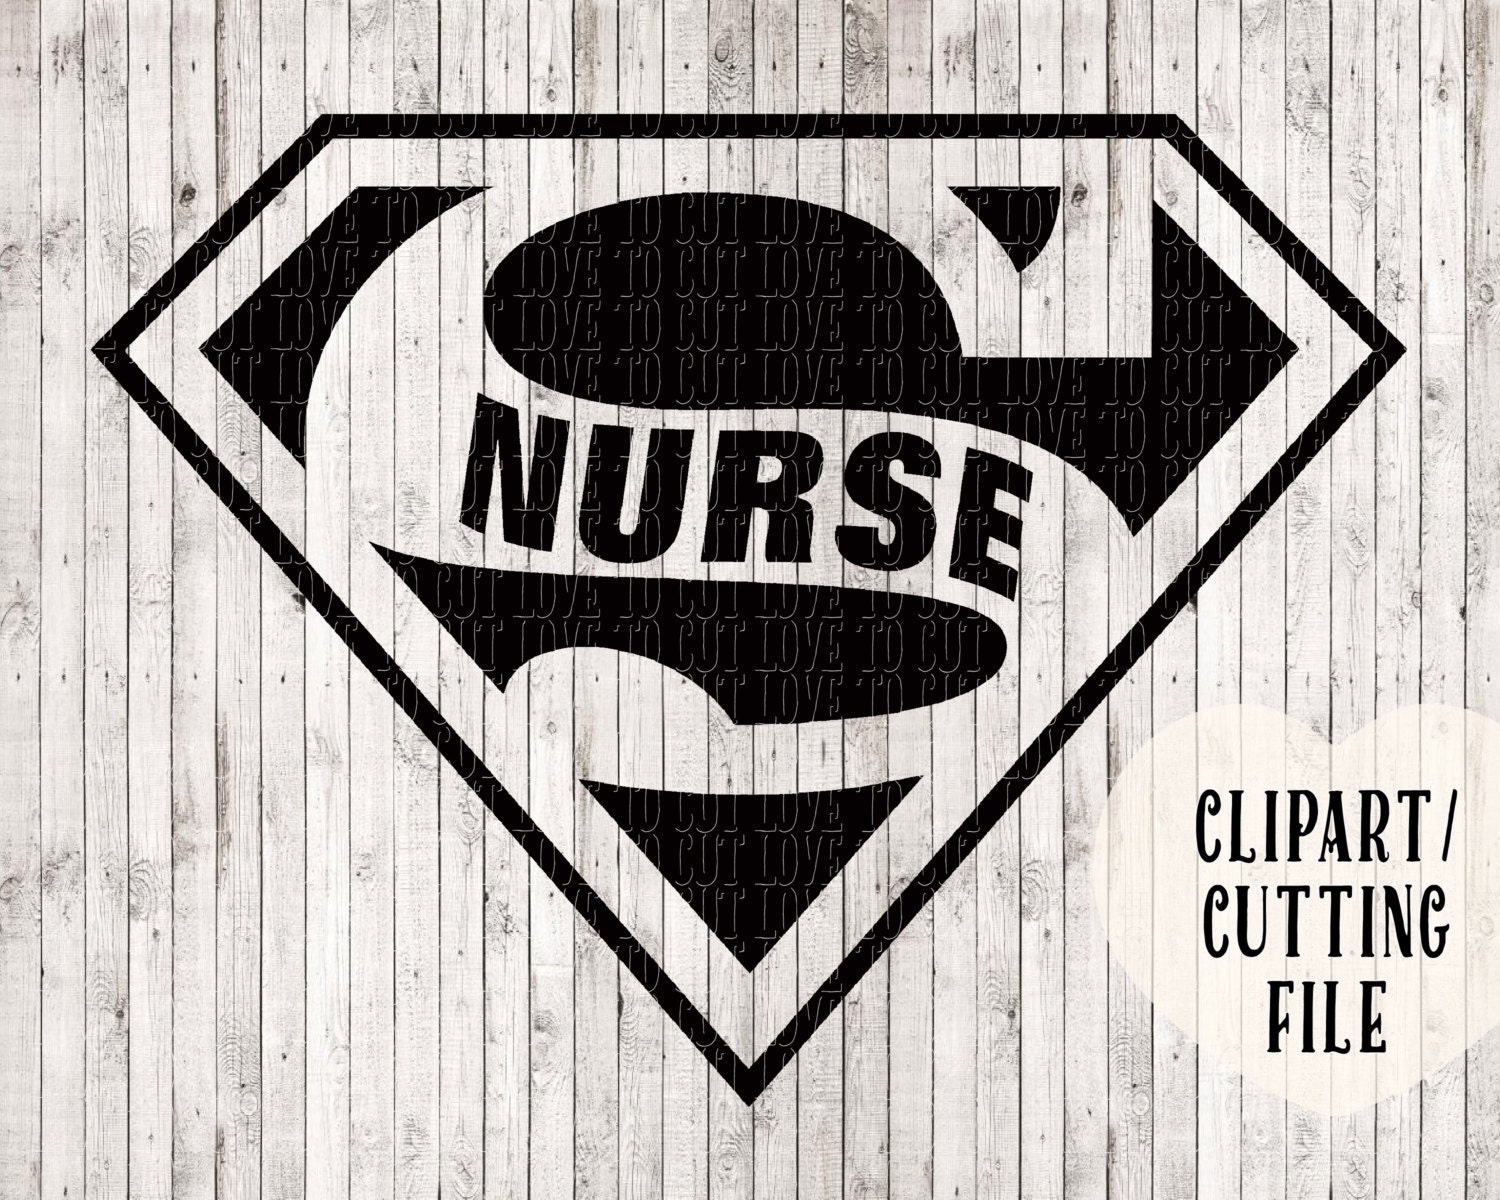 Download super nurse svg nurse svg svg files nurse clipart svg